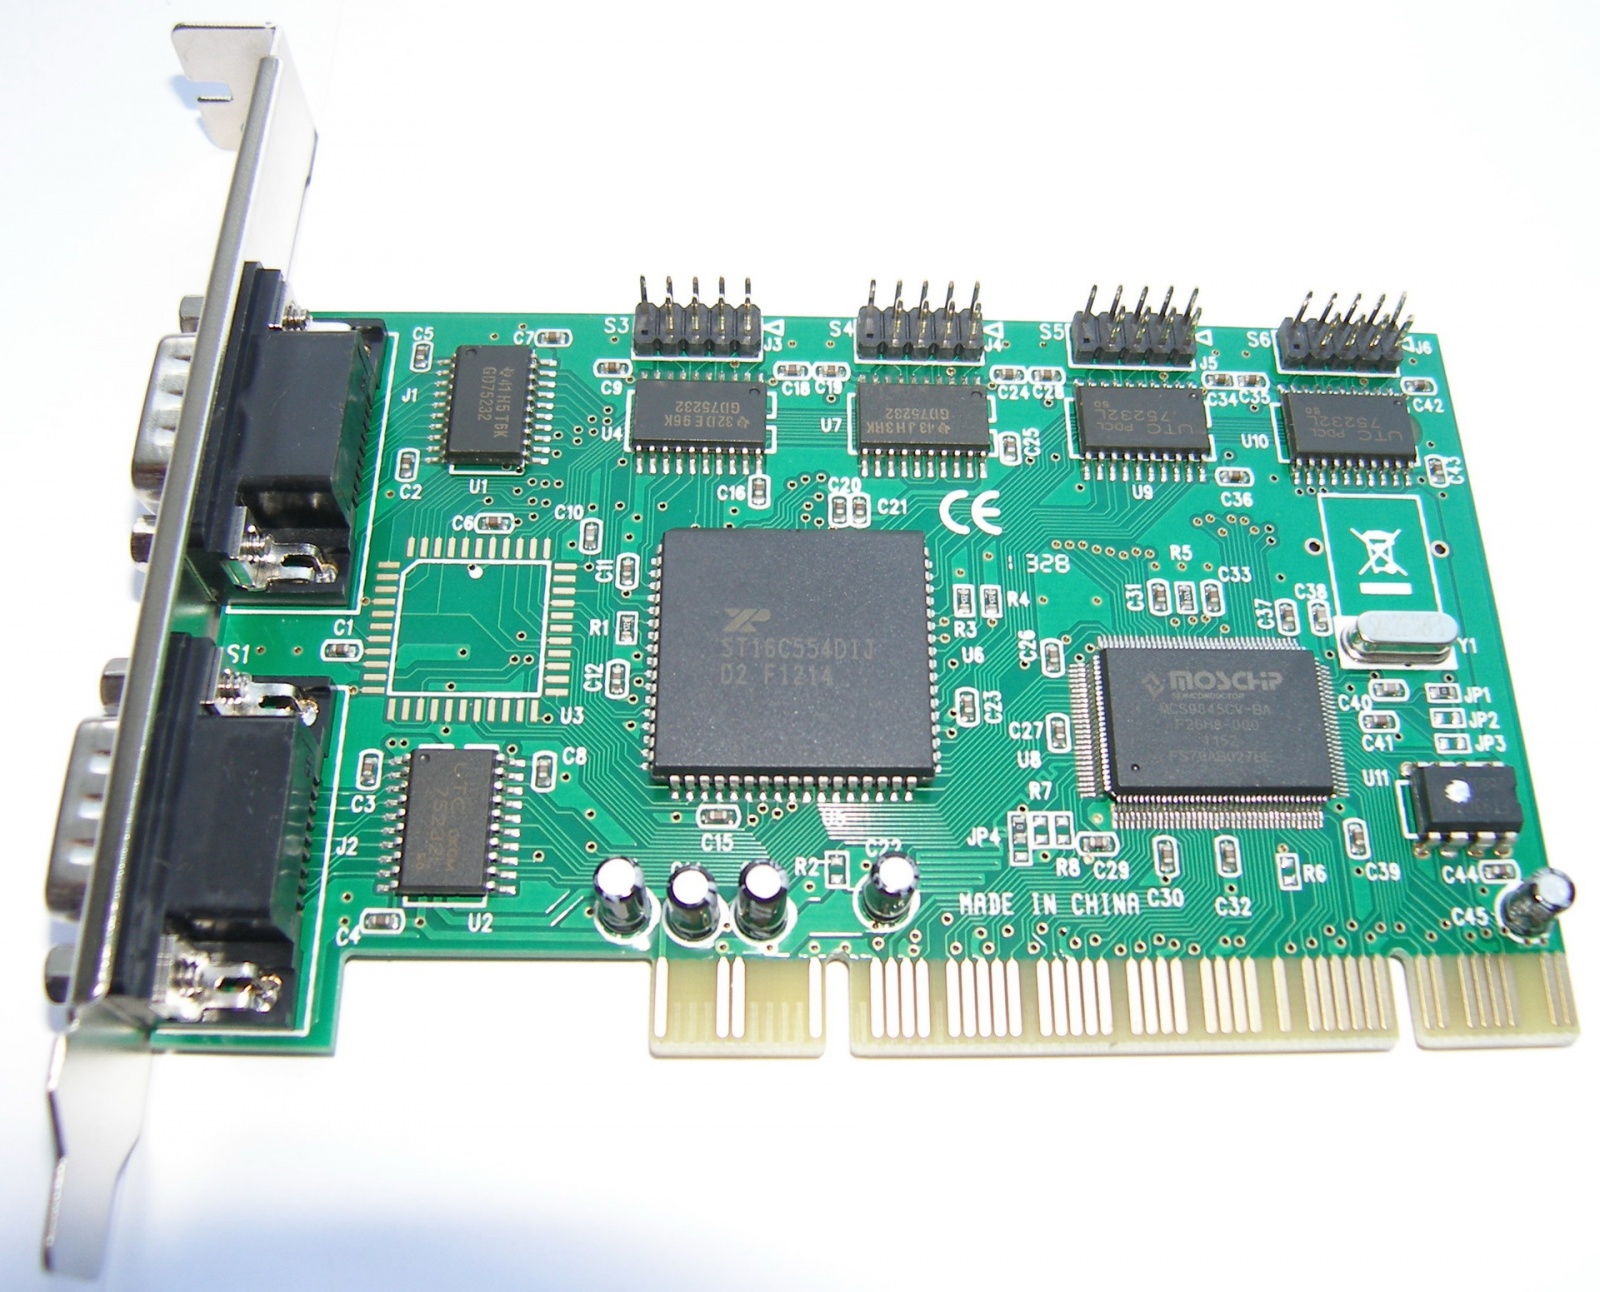 Адаптеры сопряжения RS-422 с поддержкой скоростей до 1Мбод для системной шины PCI - 2